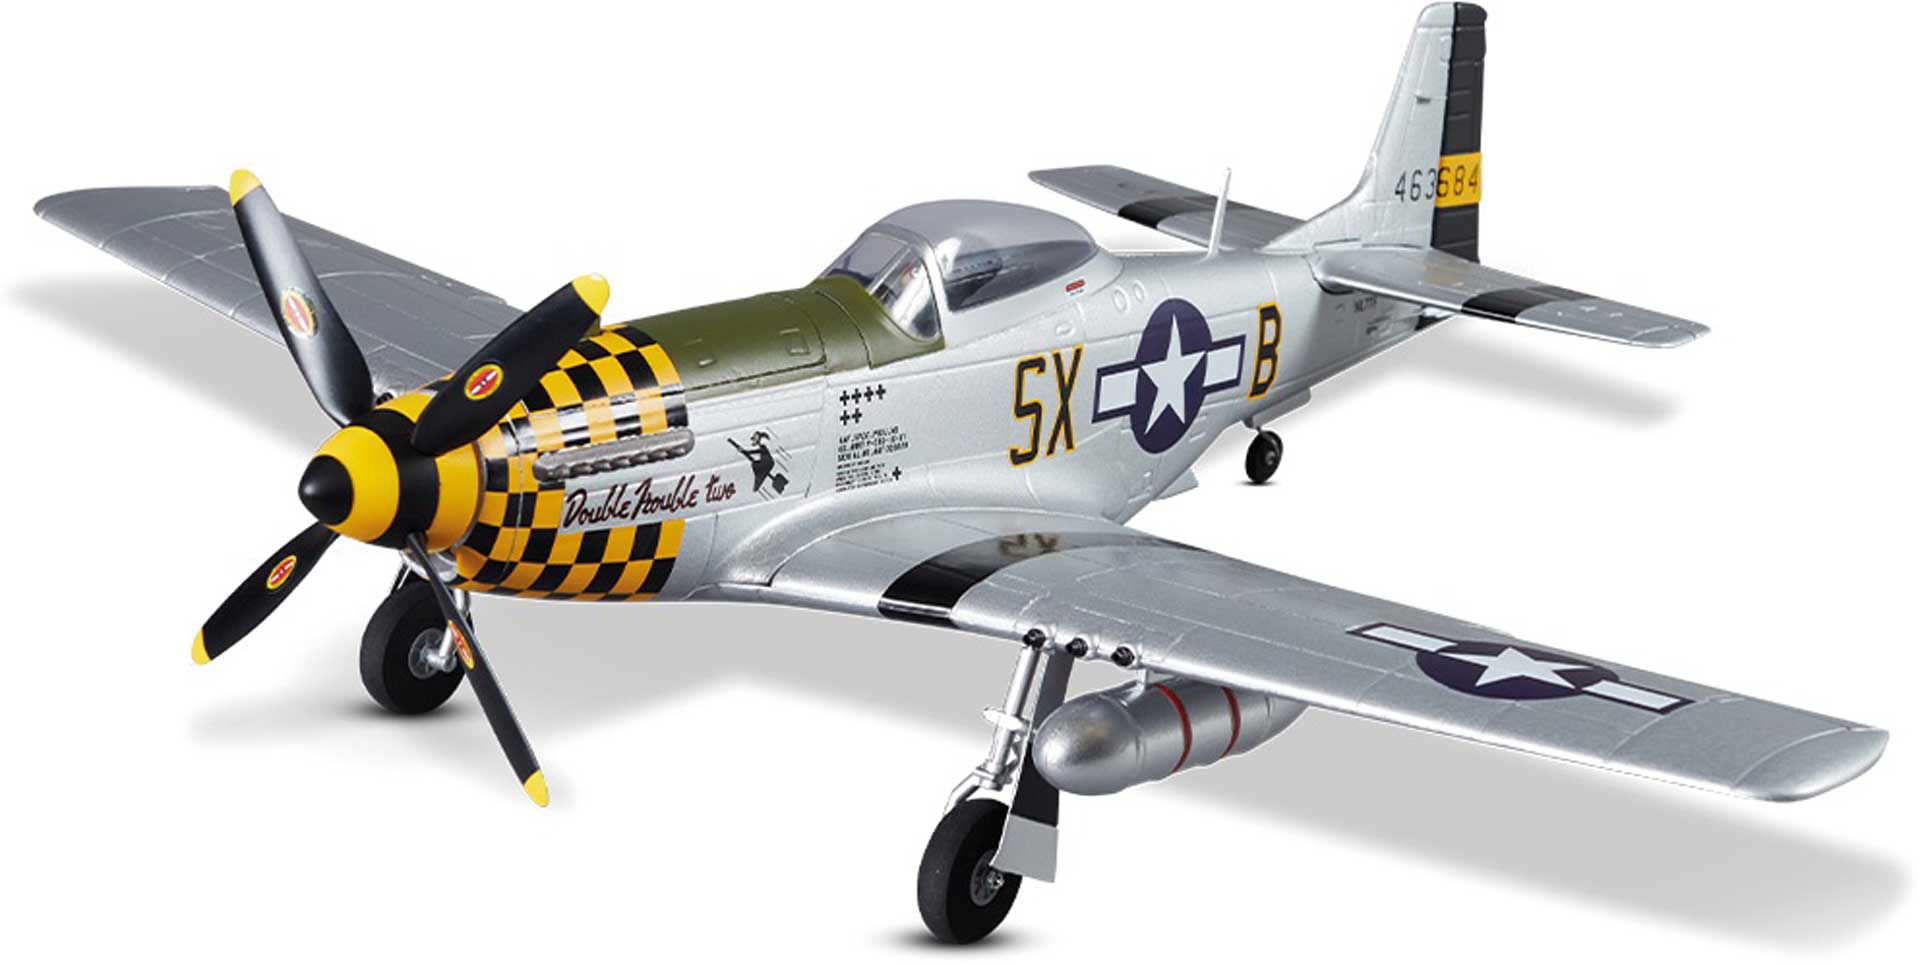 DERBEE P-51D Mustang Warbird PNP jaune - 75cm